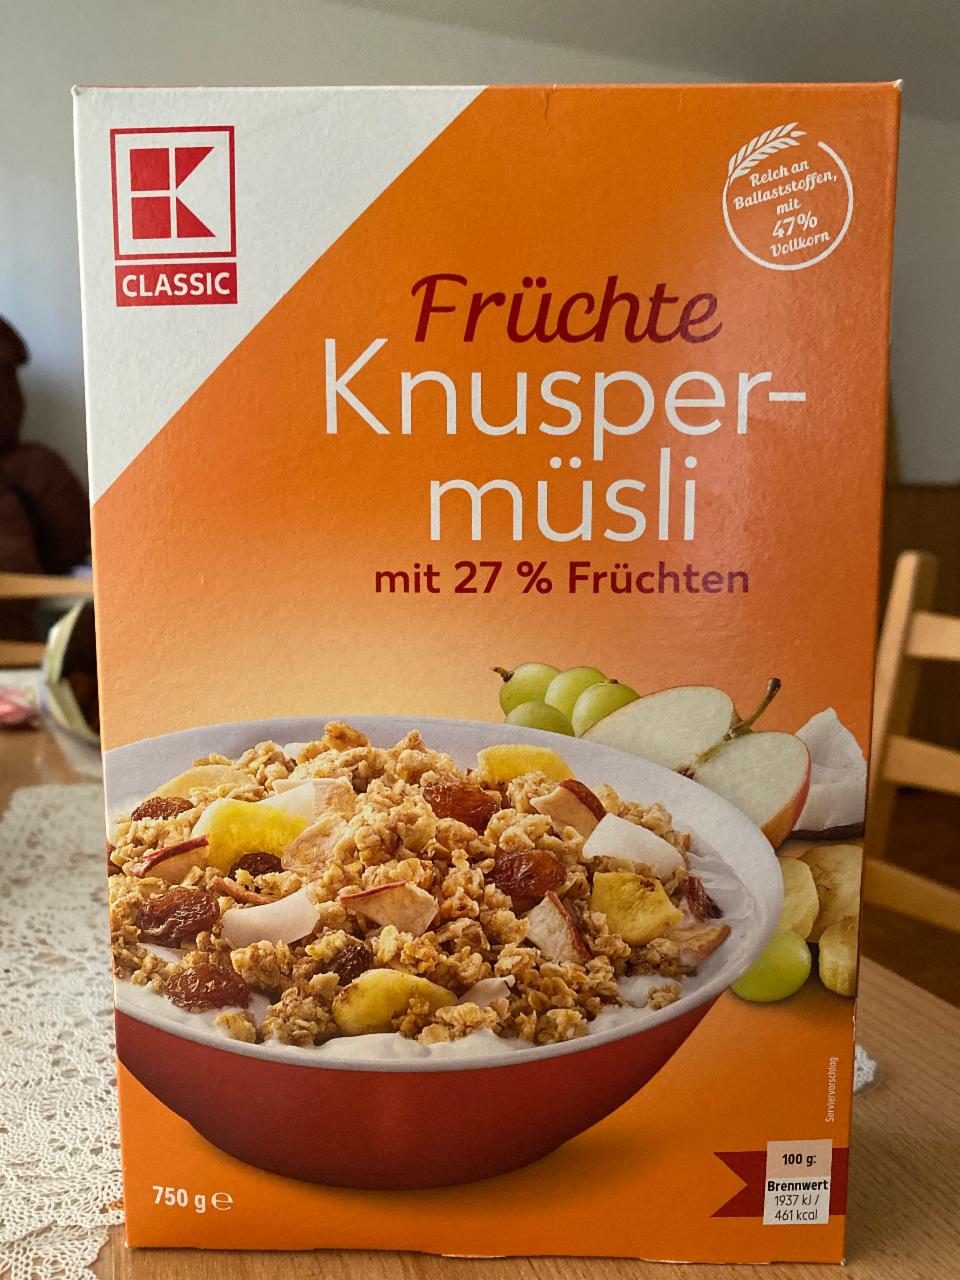 Фото - Früchte Knusper-müsli mit 27% Früchten K-Classic